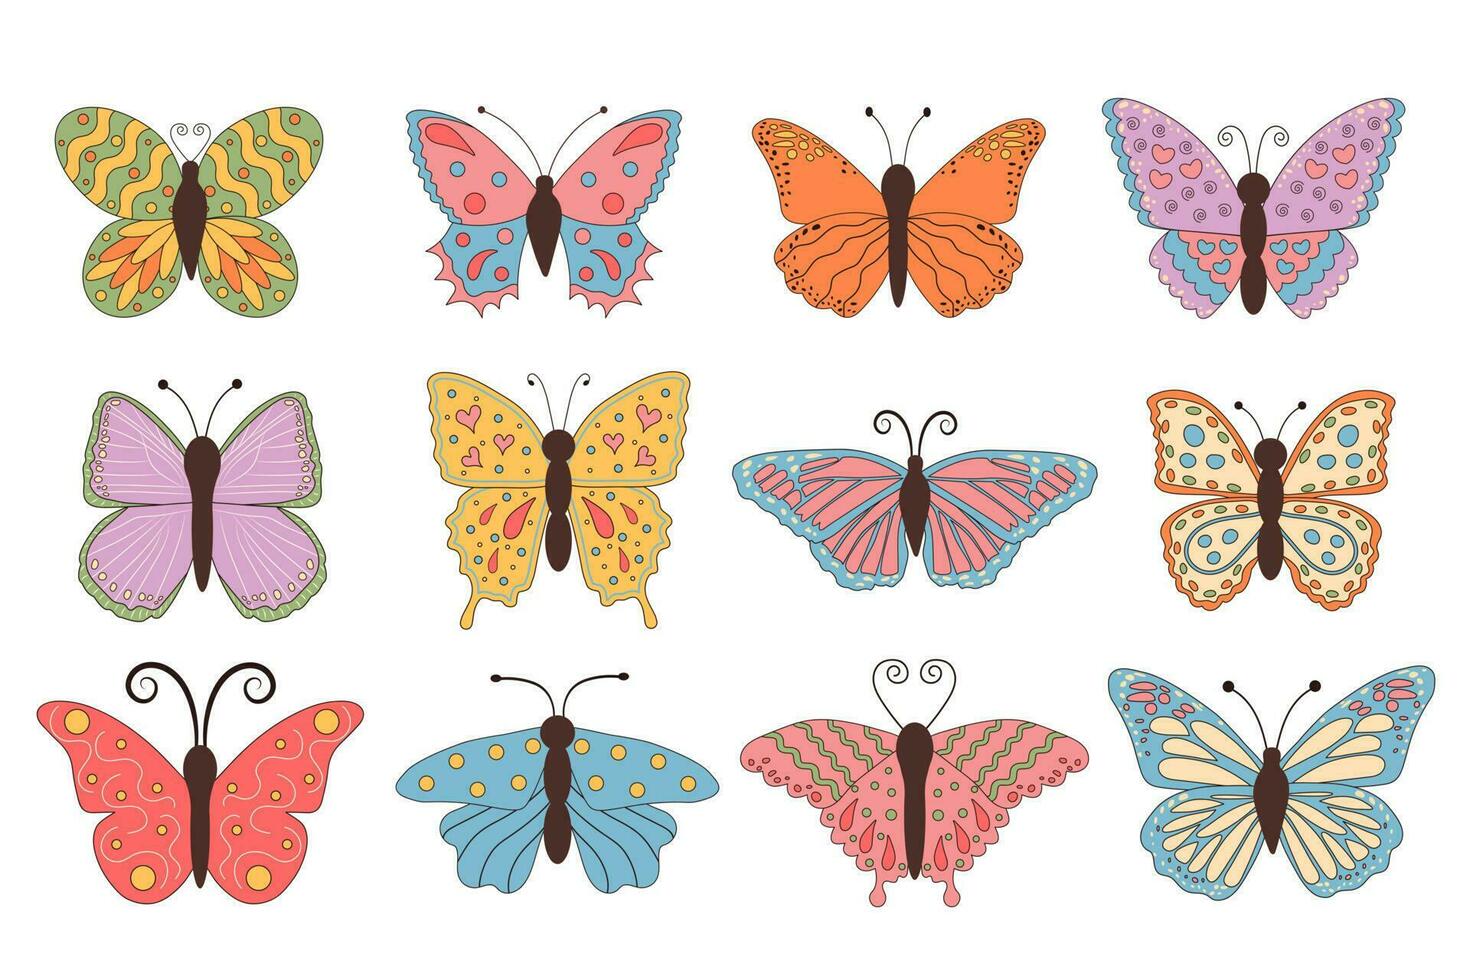 groovy retro borboleta conjunto dentro anos 60 Anos 70 estilo. hippie boho verão colorida borboletas impressão coleção. linear cor vetor ilustração.